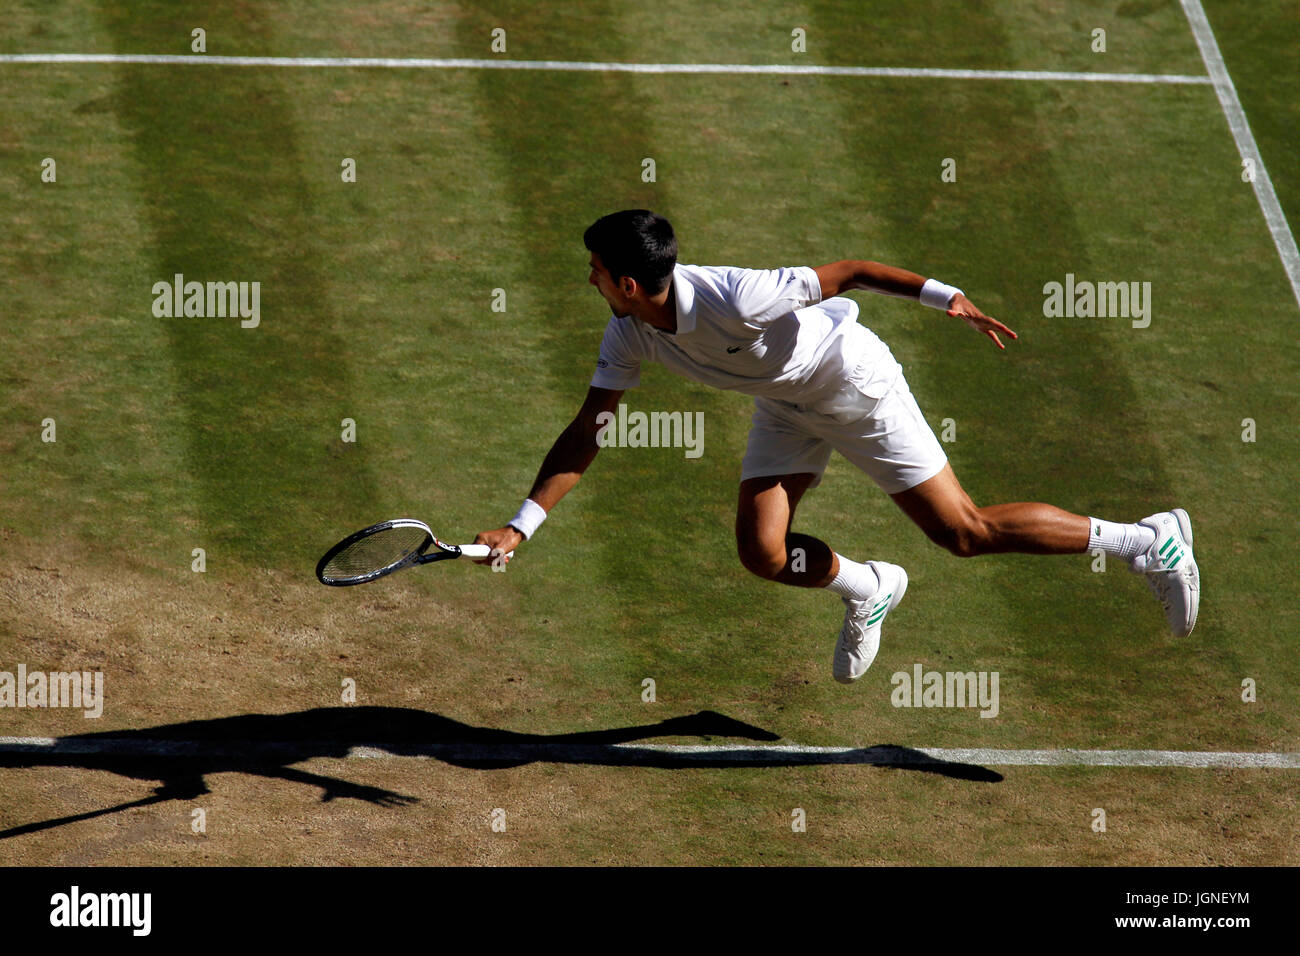 Londres, Royaume-Uni. 08 juillet, 2017. Wimbledon Tennis : Londres, 8 juillet, 2017 - La Serbie de Novak Djokovic en action contre Ernests Gulbis au cours de l'action du troisième cycle à Wimbledon. Crédit : Adam Stoltman/Alamy Live News Banque D'Images